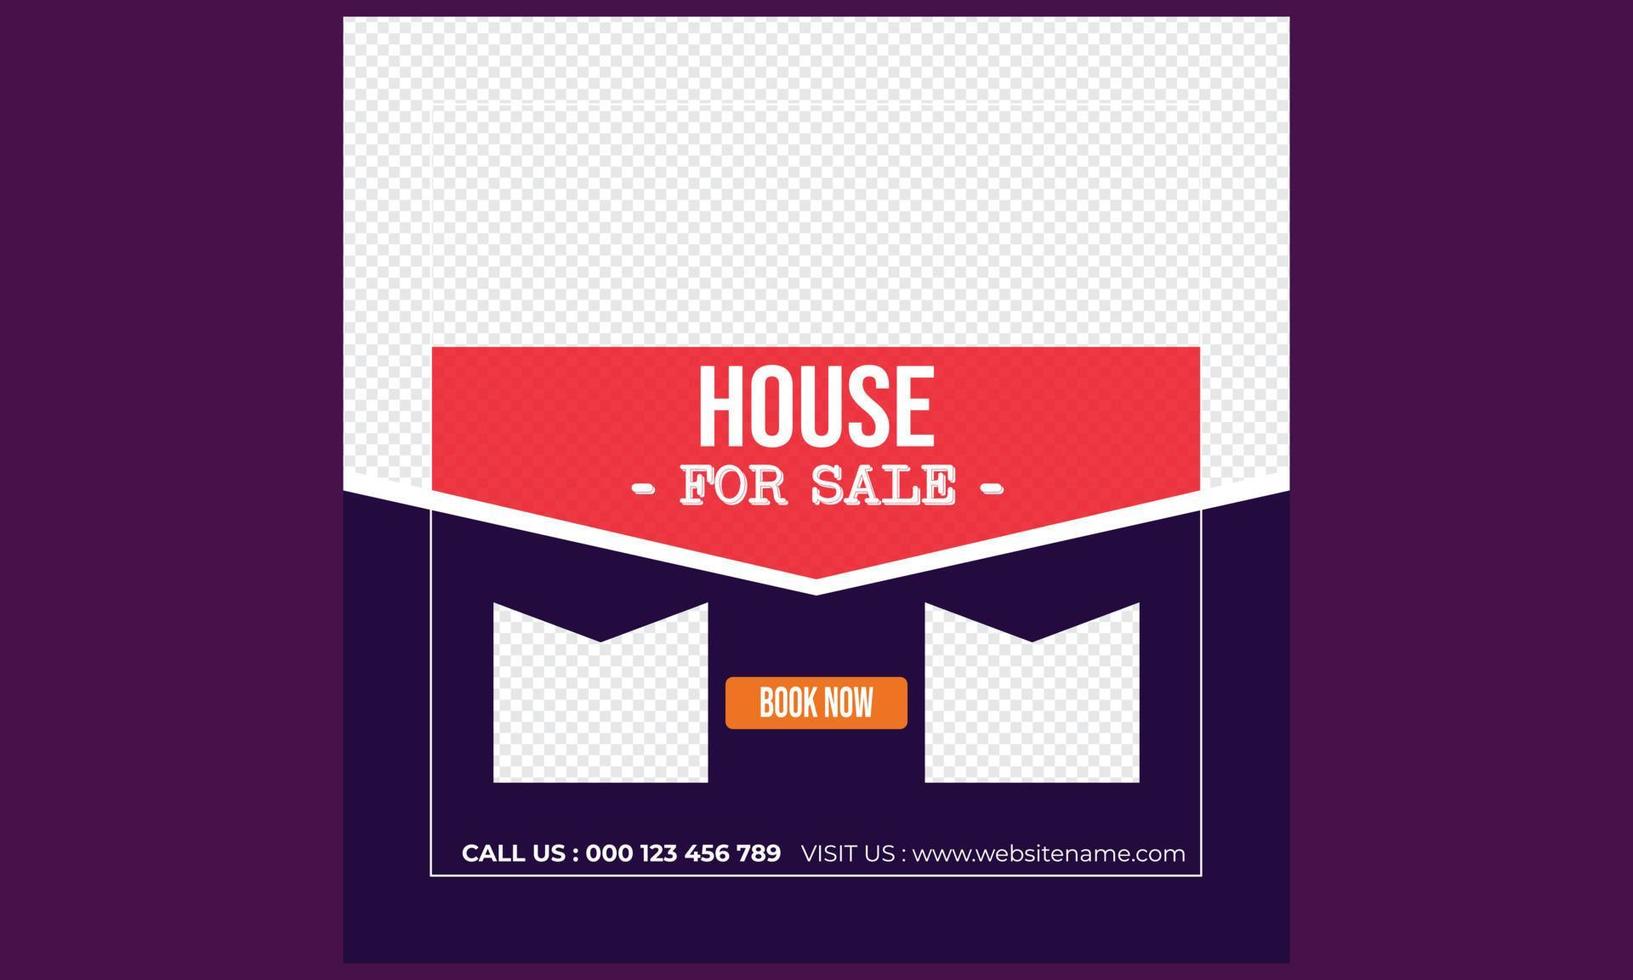 House for sale social media post design.eps vector